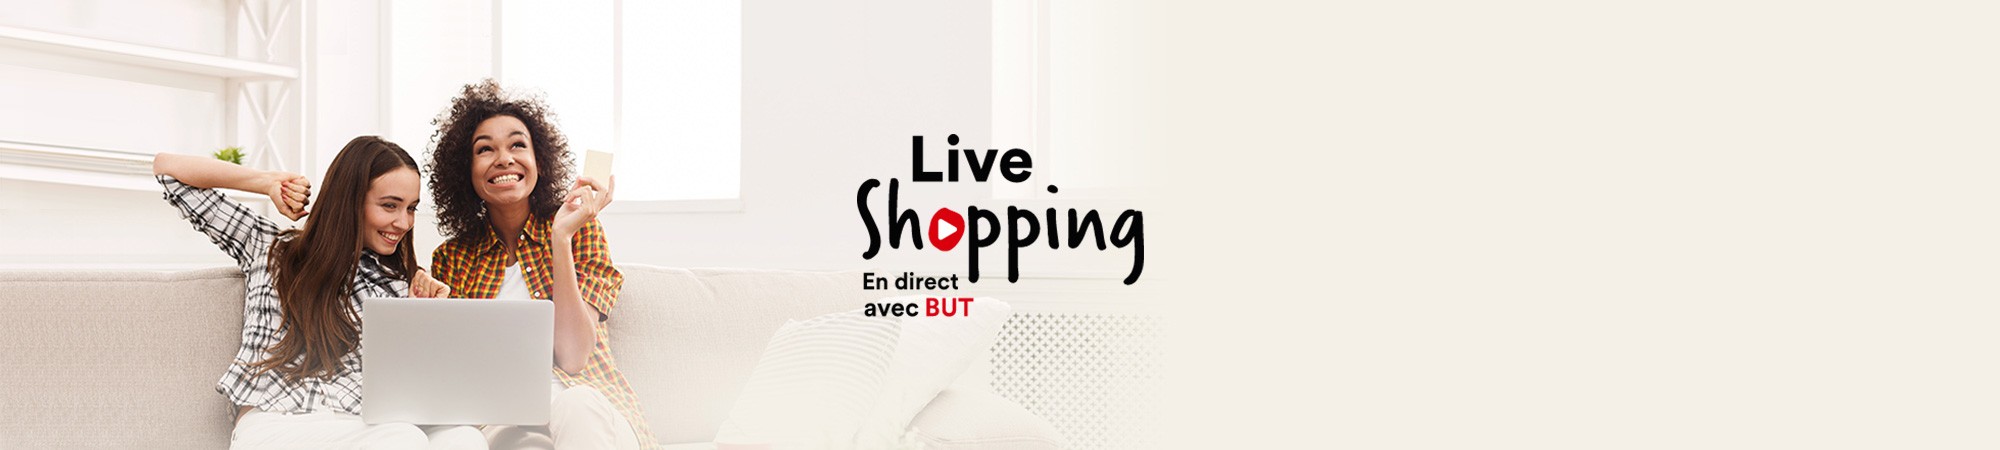  Ajout d'un Live Shopping sur la fiche produit du site but.fr